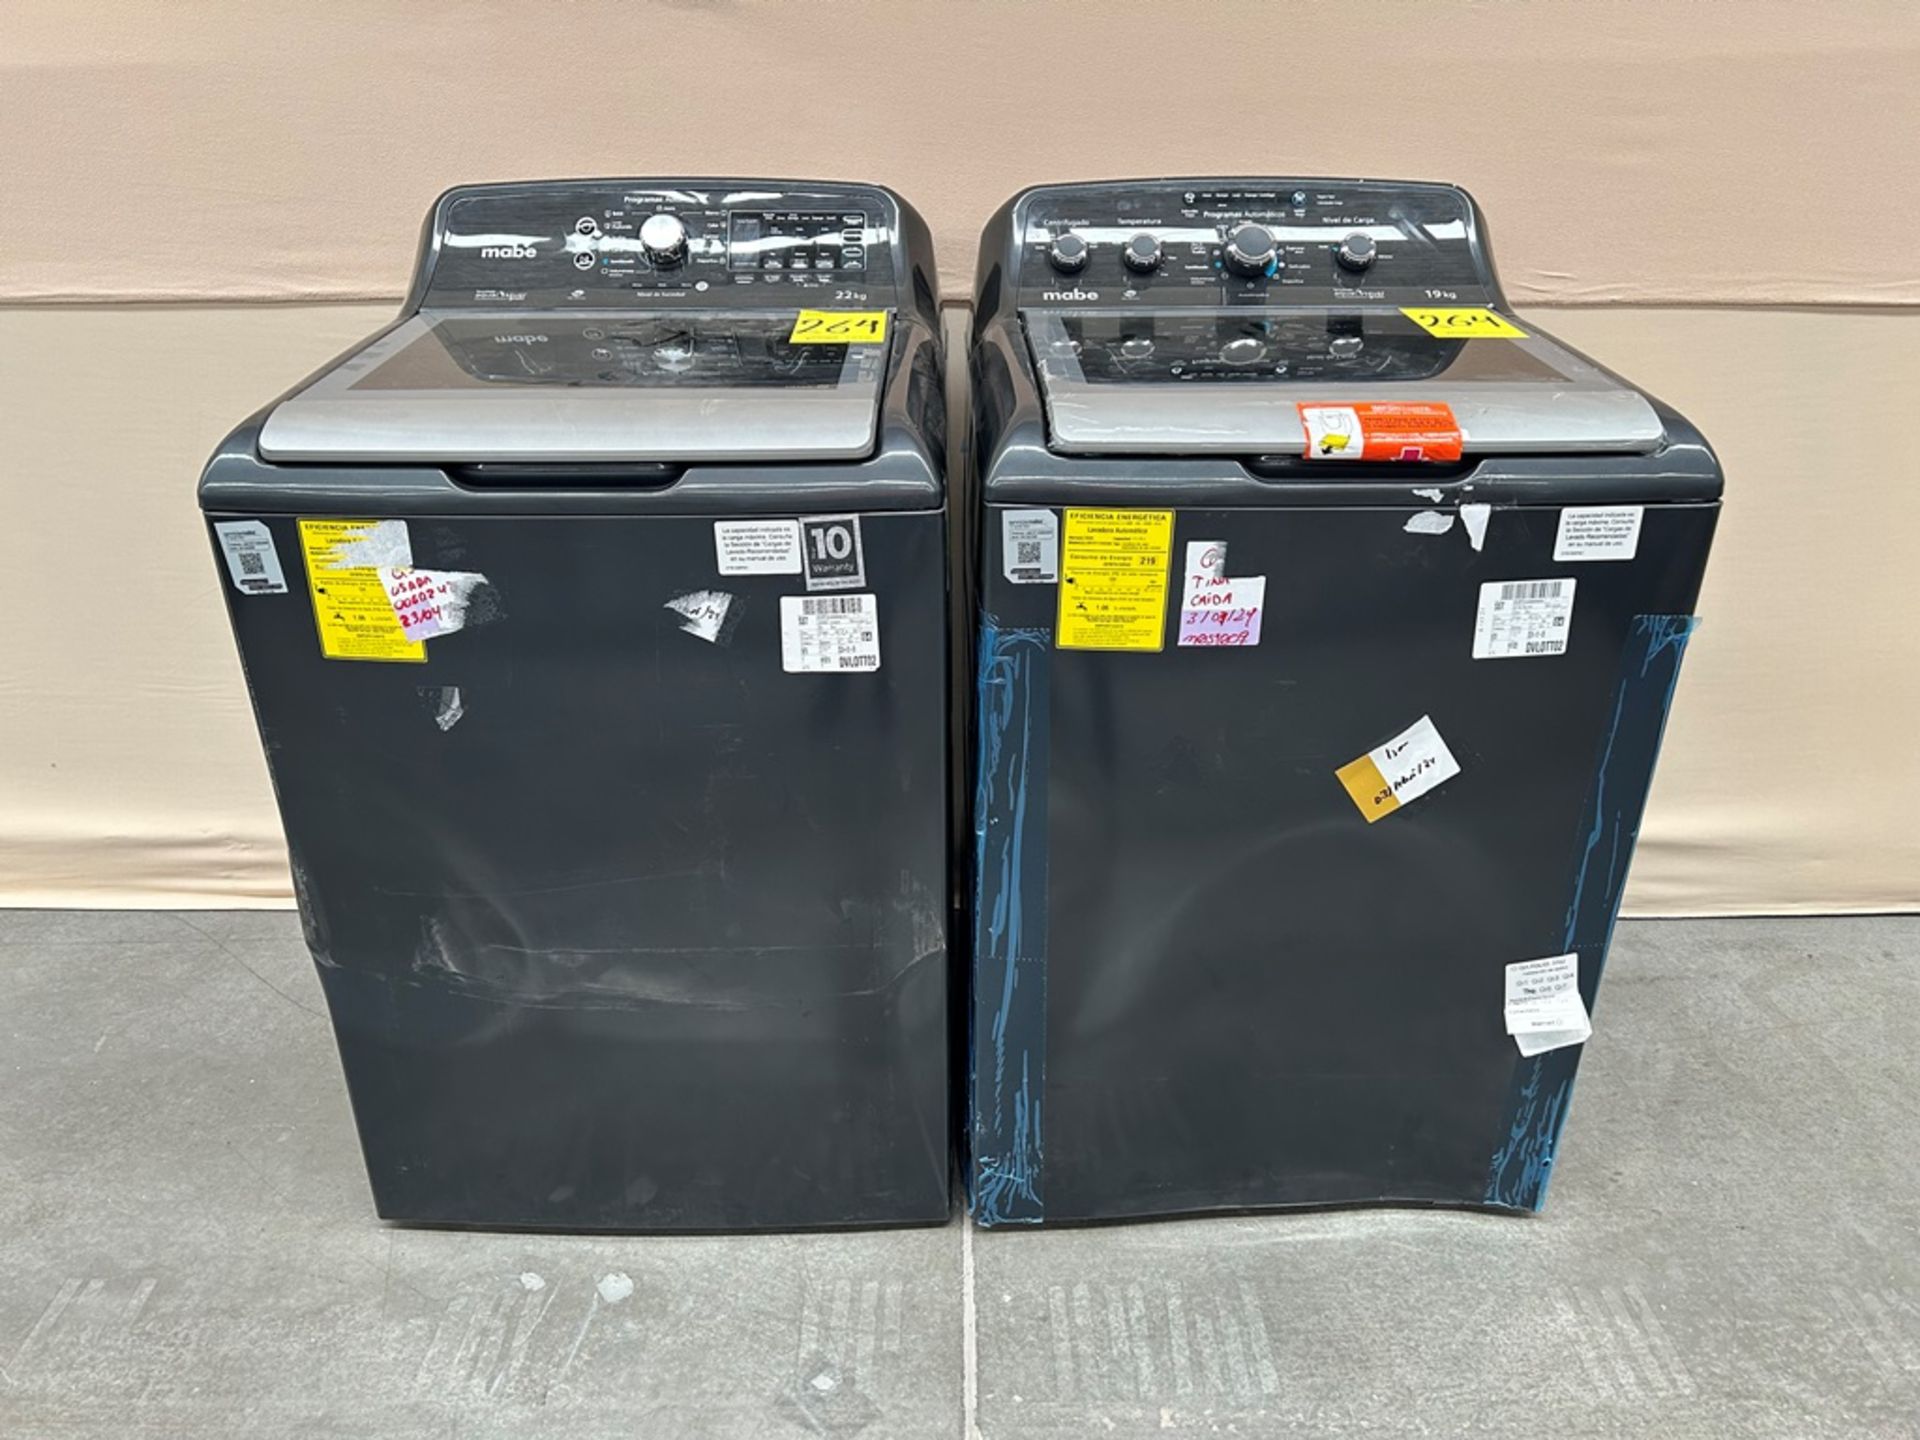 Lote de 2 lavadoras contiene: 1 Lavadora de 22 KG Marca MABE, Modelo LMH72211WDAB00, Serie S26608,